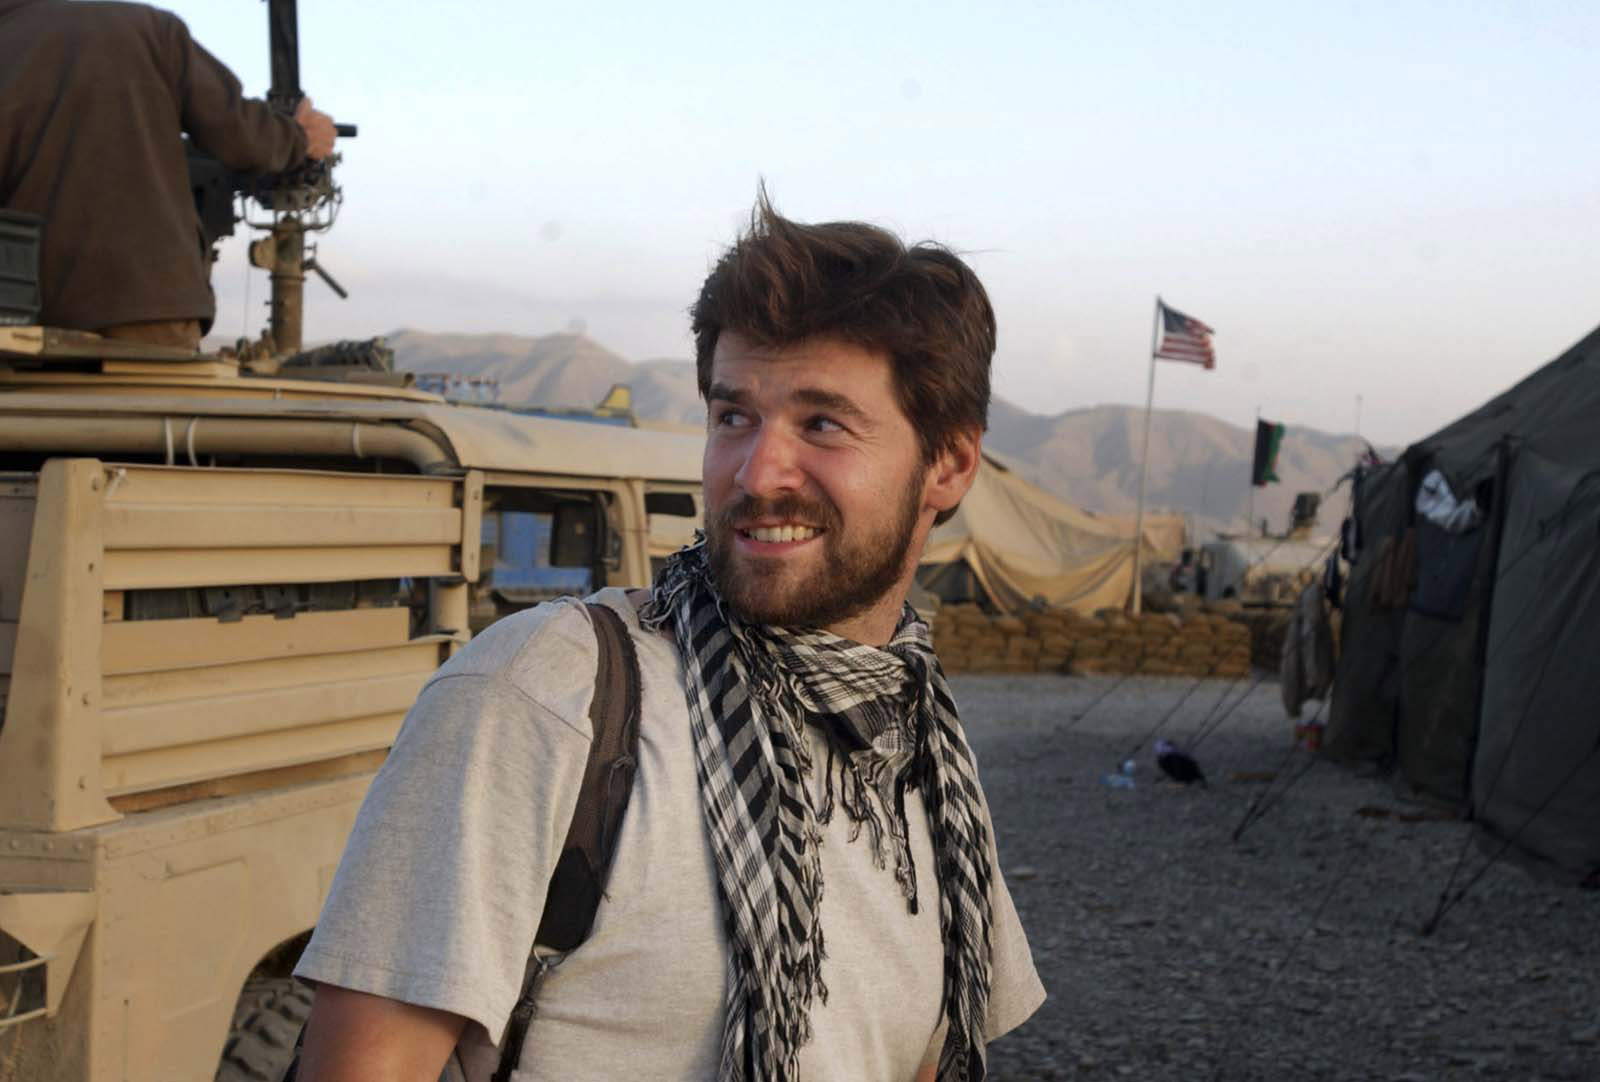 Chris Hondros i Afghanistan. Den prisbelönade fotografen blev 41 år.